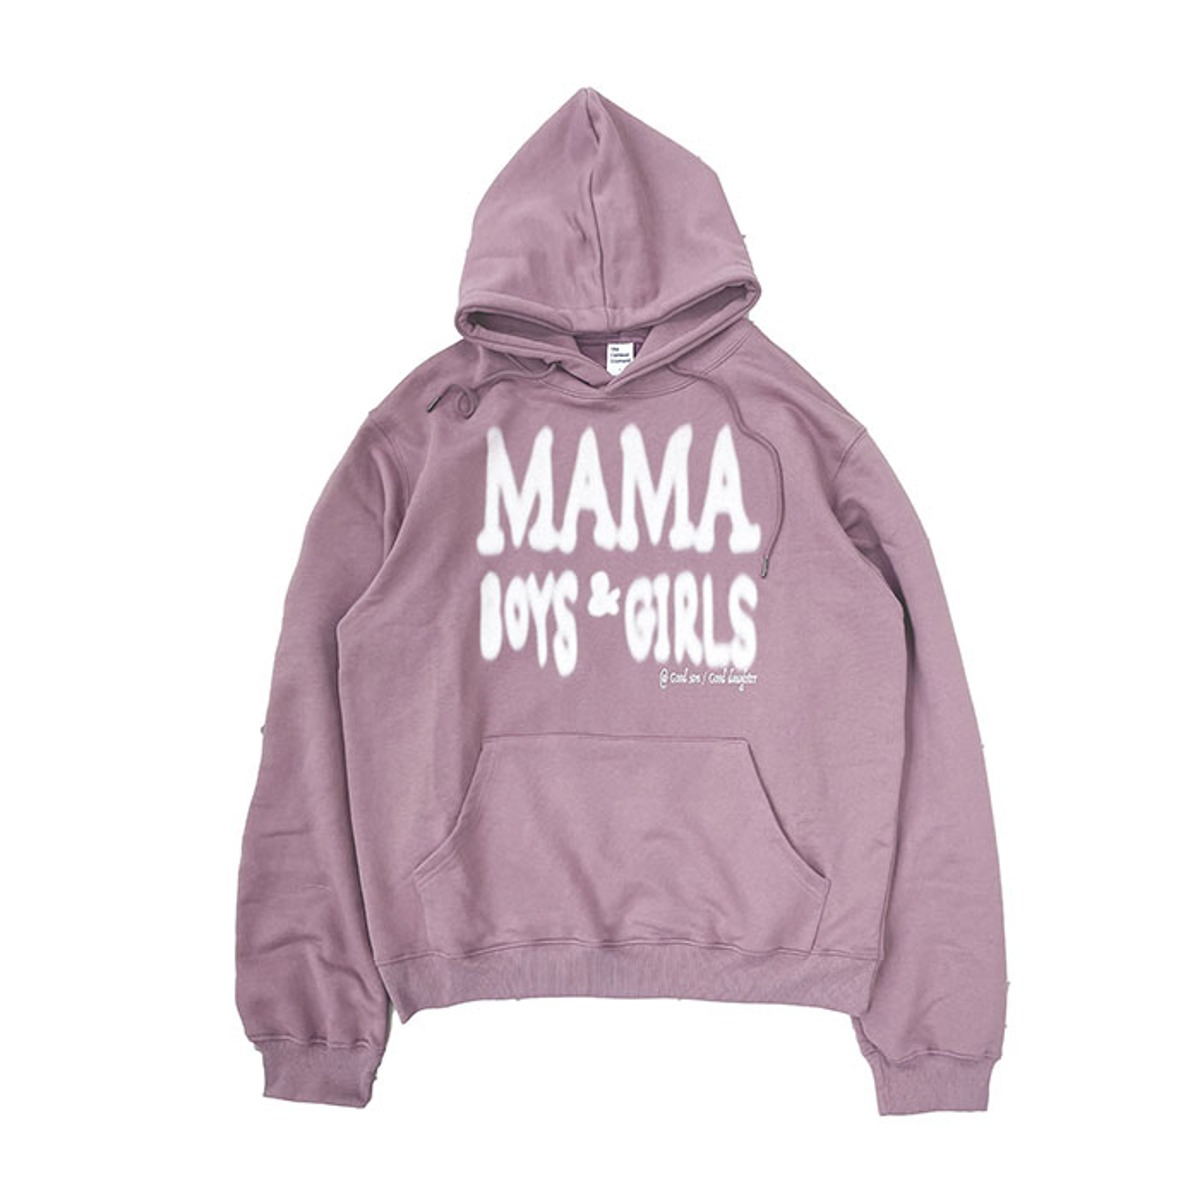 TCM mama hoodie (indi pink)